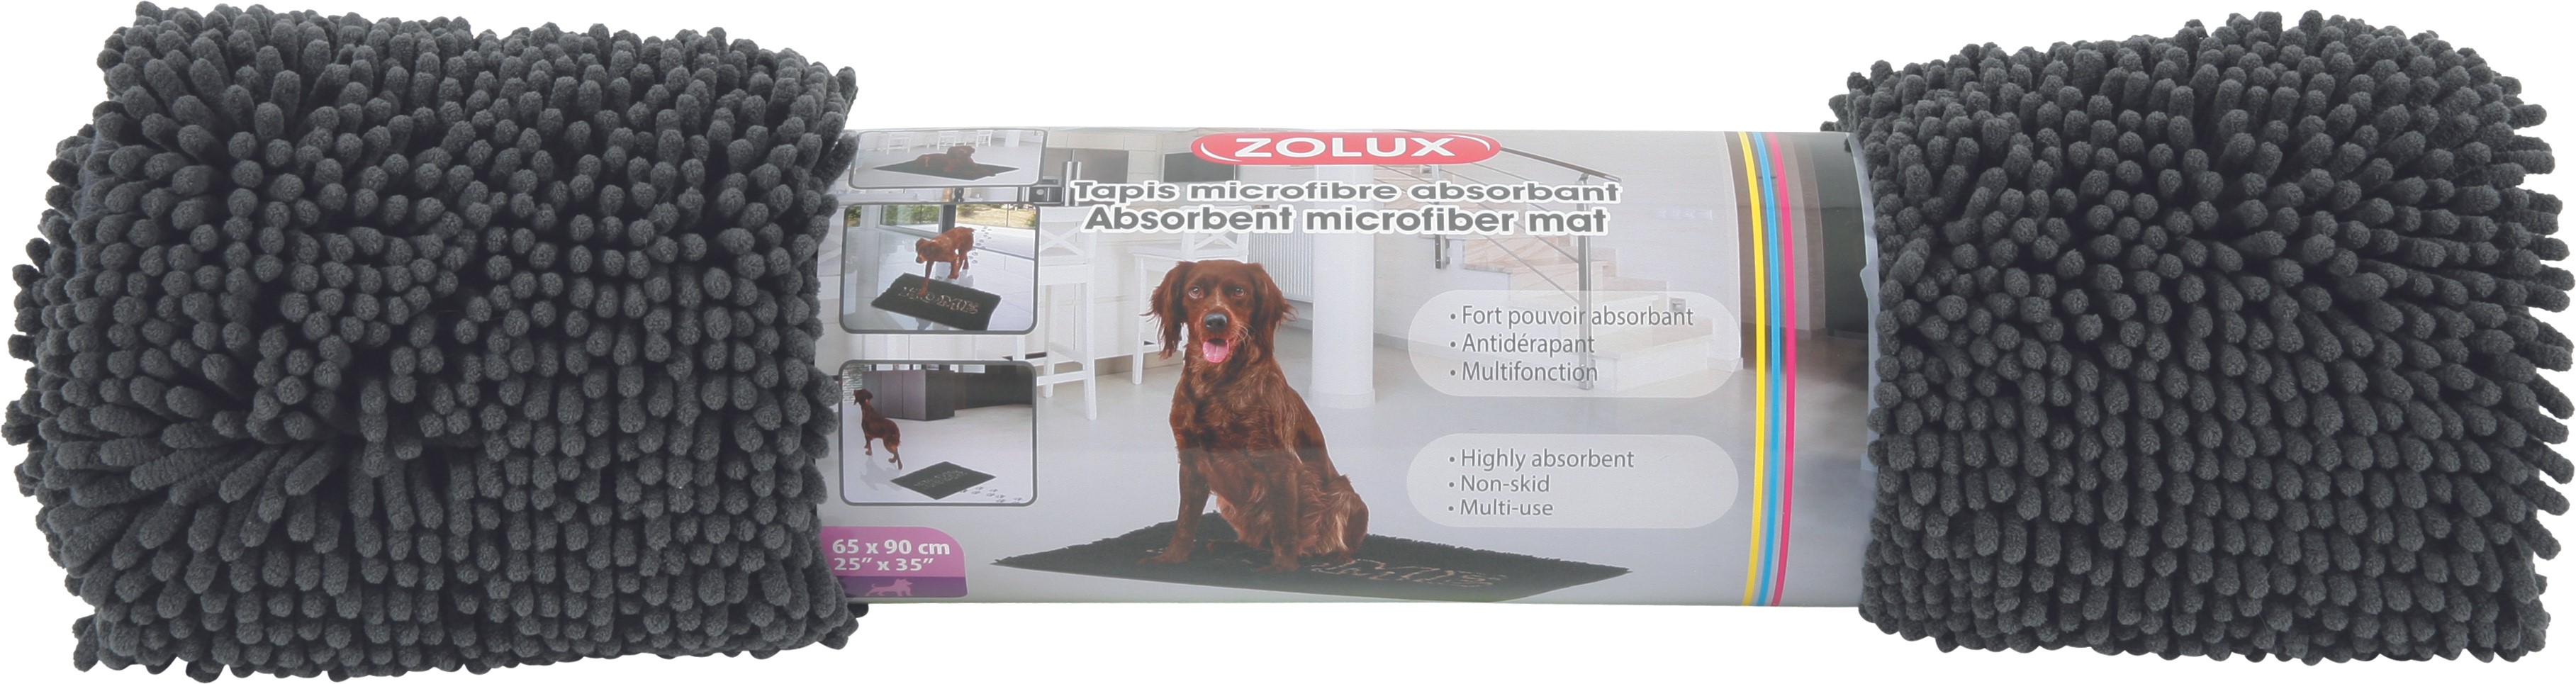 Tapis microfibre absorbant pour chien L80 p55cm